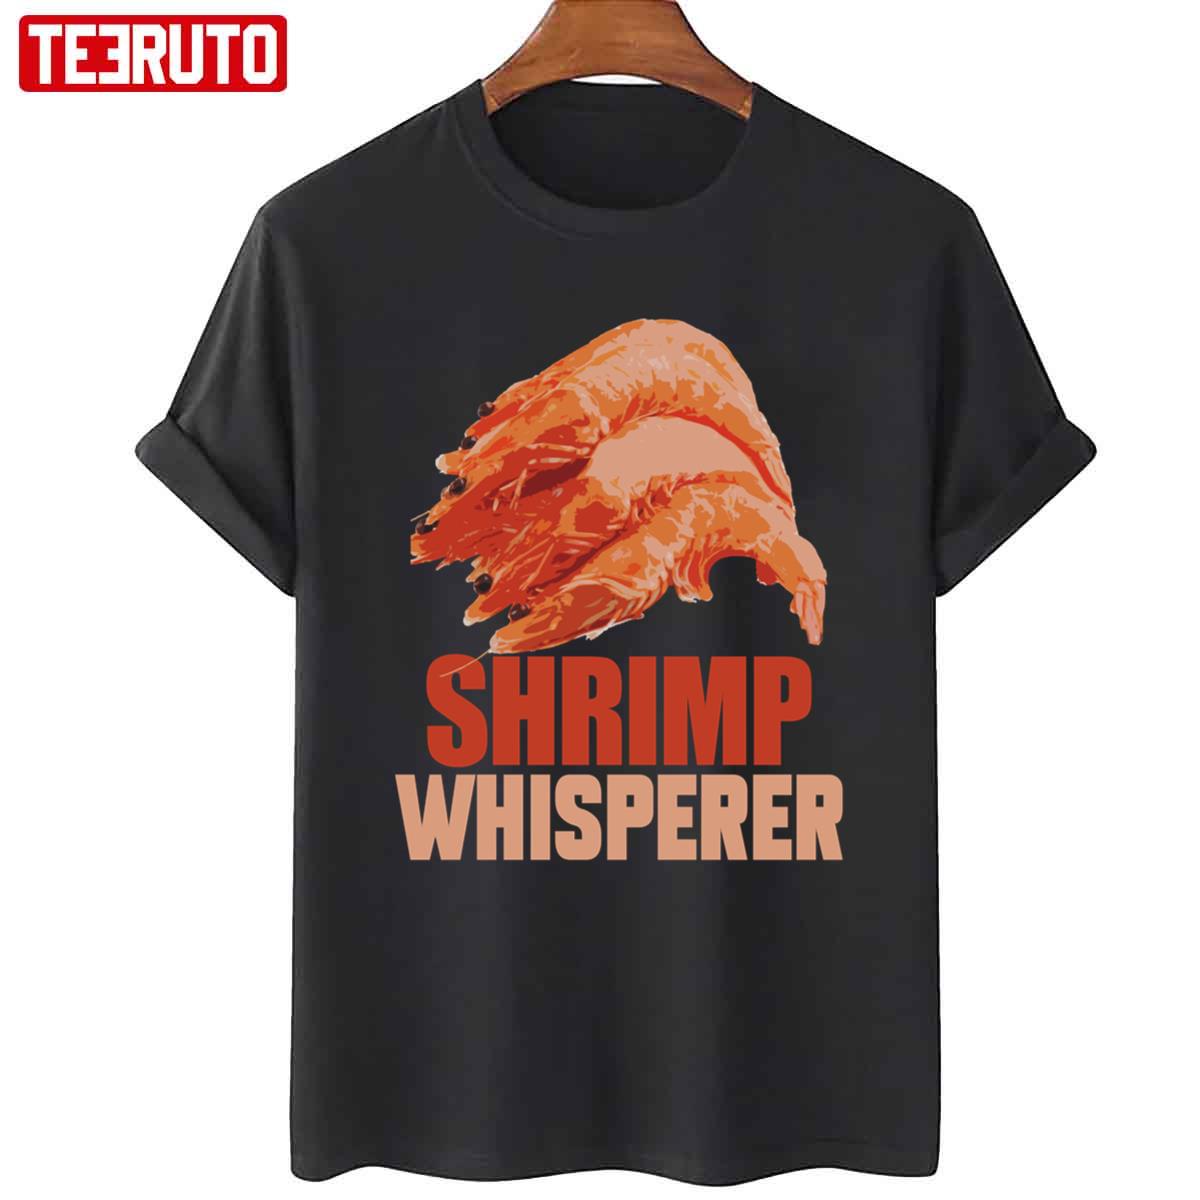 Shrimp Whisperer Unisex T-Shirt